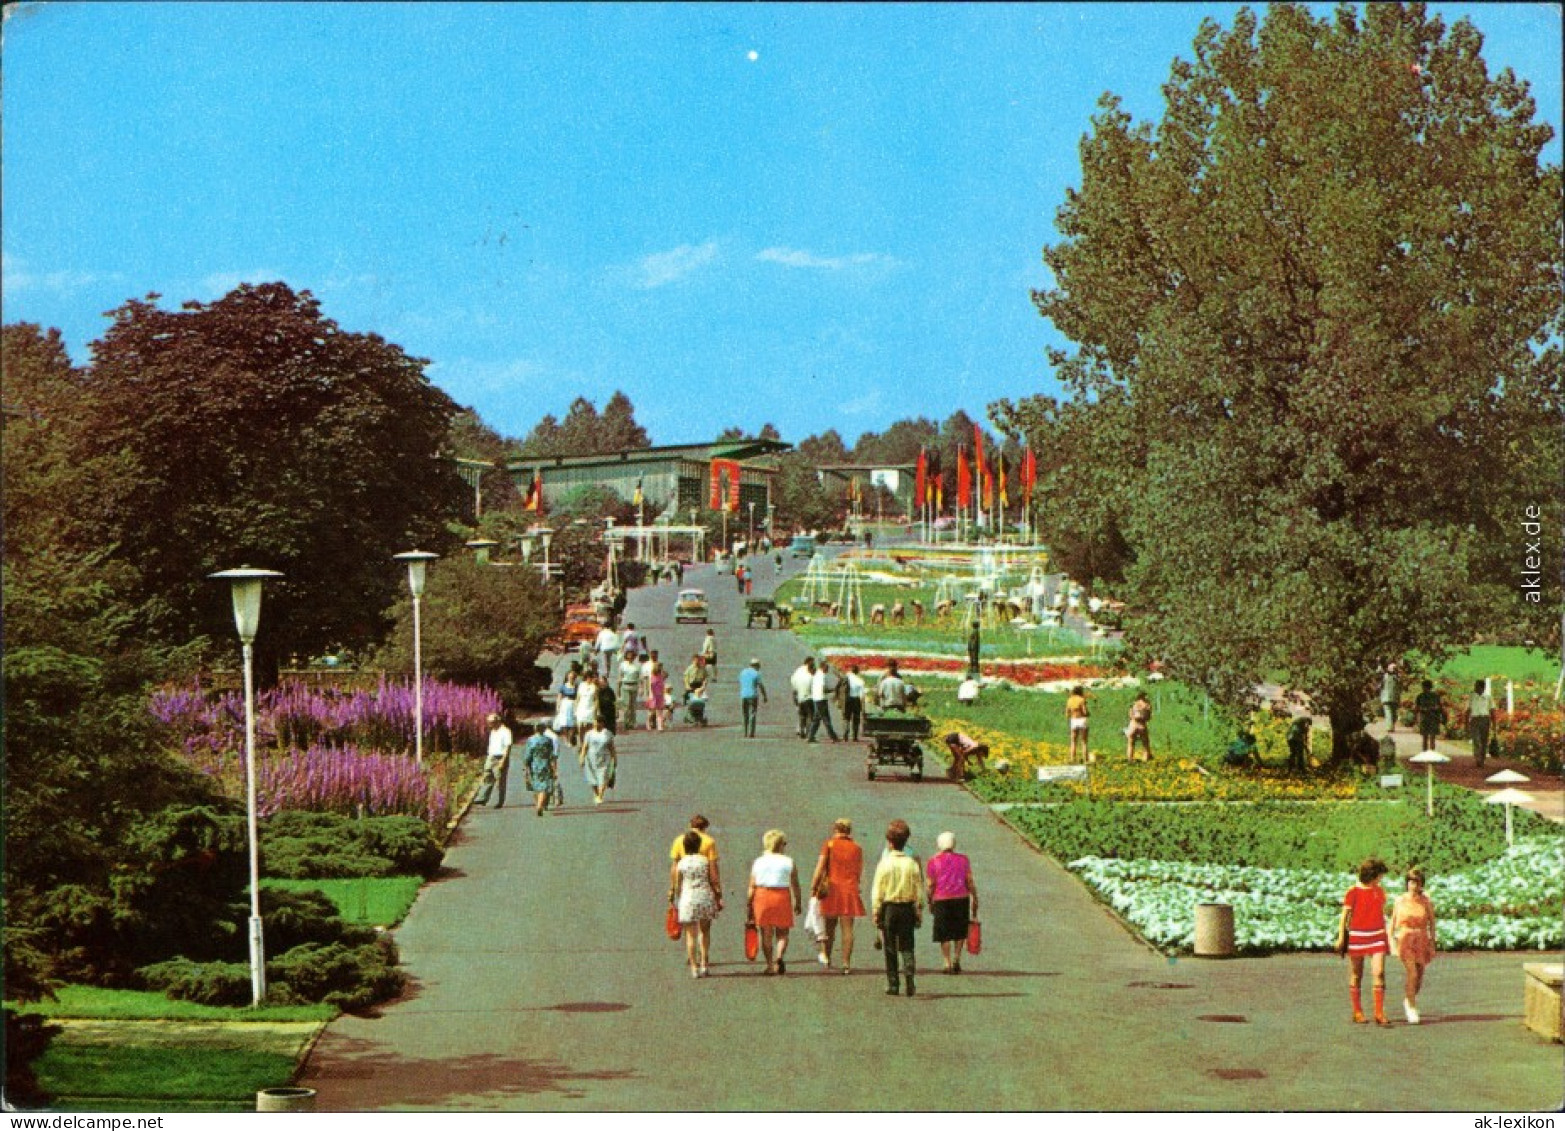 Ansichtskarte Erfurt Internationale Gartenbauausstellung Der DDR (IGA) 1974 - Erfurt